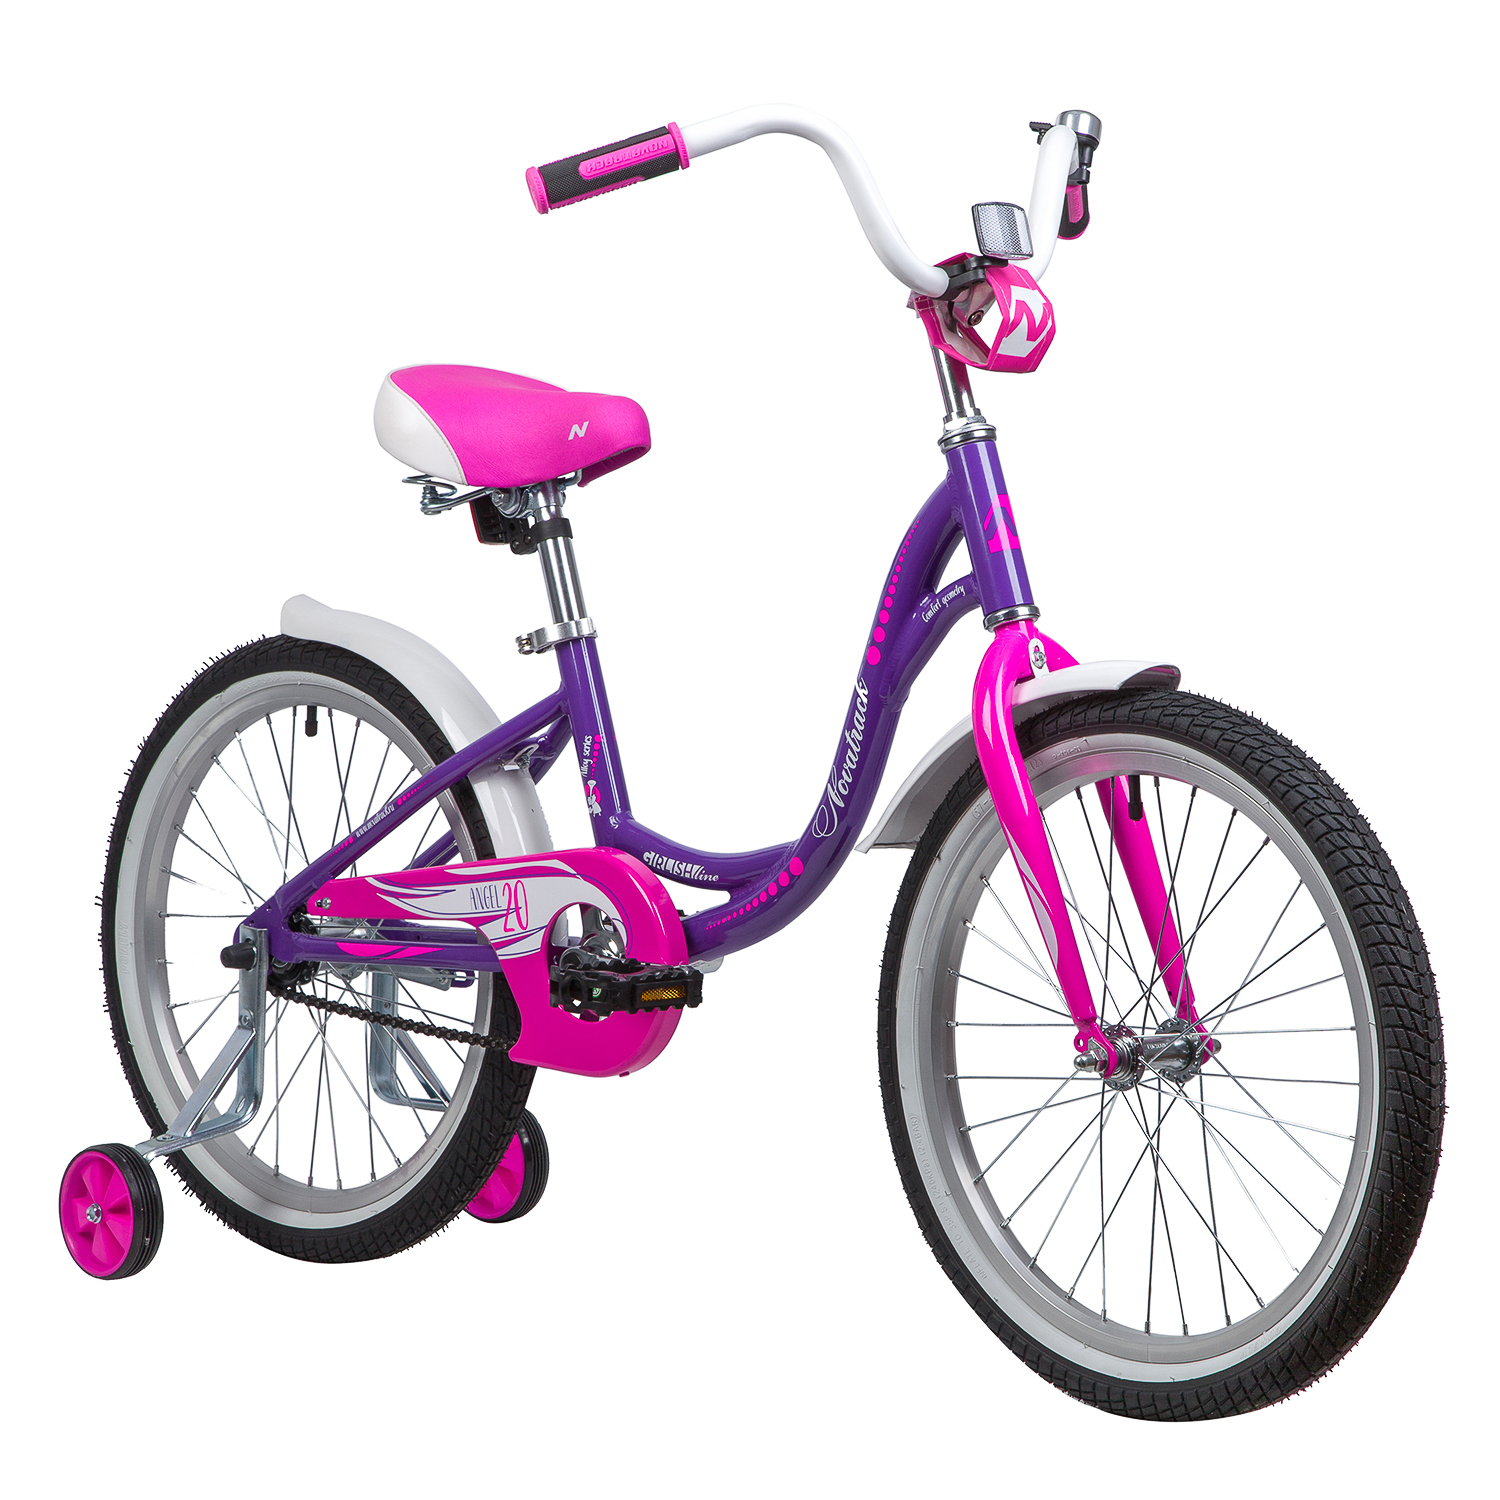 Велик для девочек. Велосипед Новатрек 20 дюймов для девочки. Novatrack Angel 20. Велосипед Новатрек подростковый. Велосипед Новатрек 20 розовый.